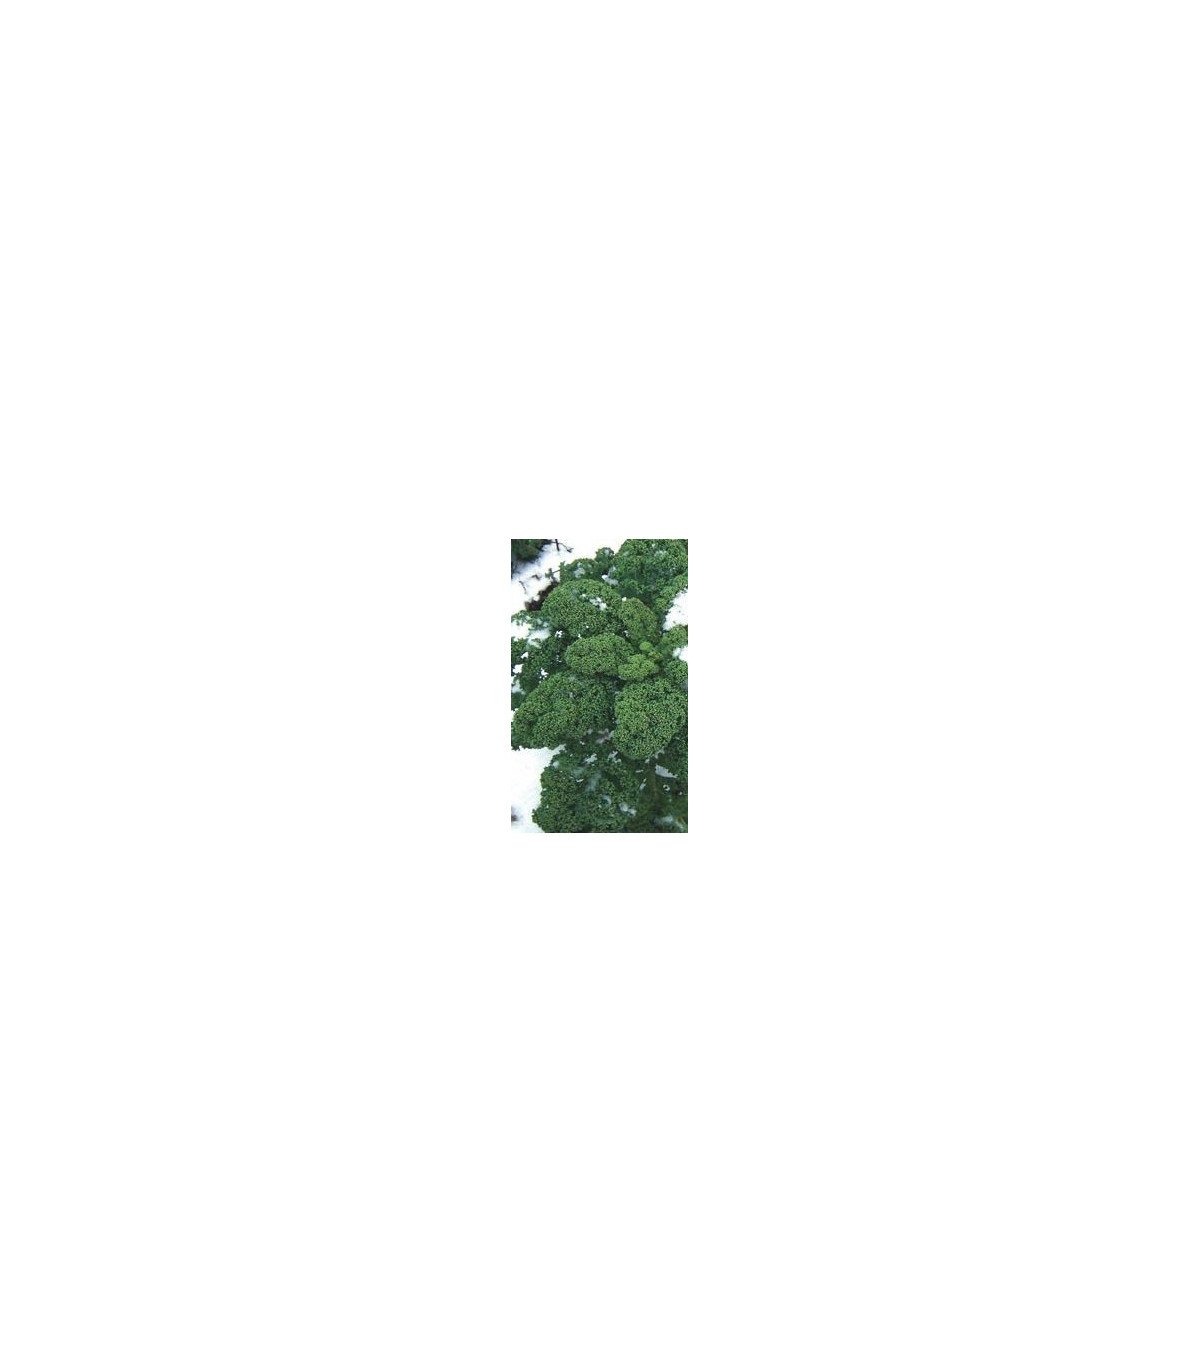 Kadeřávek zelený středně vysoký - semena kadeřávku - 0,9 gr